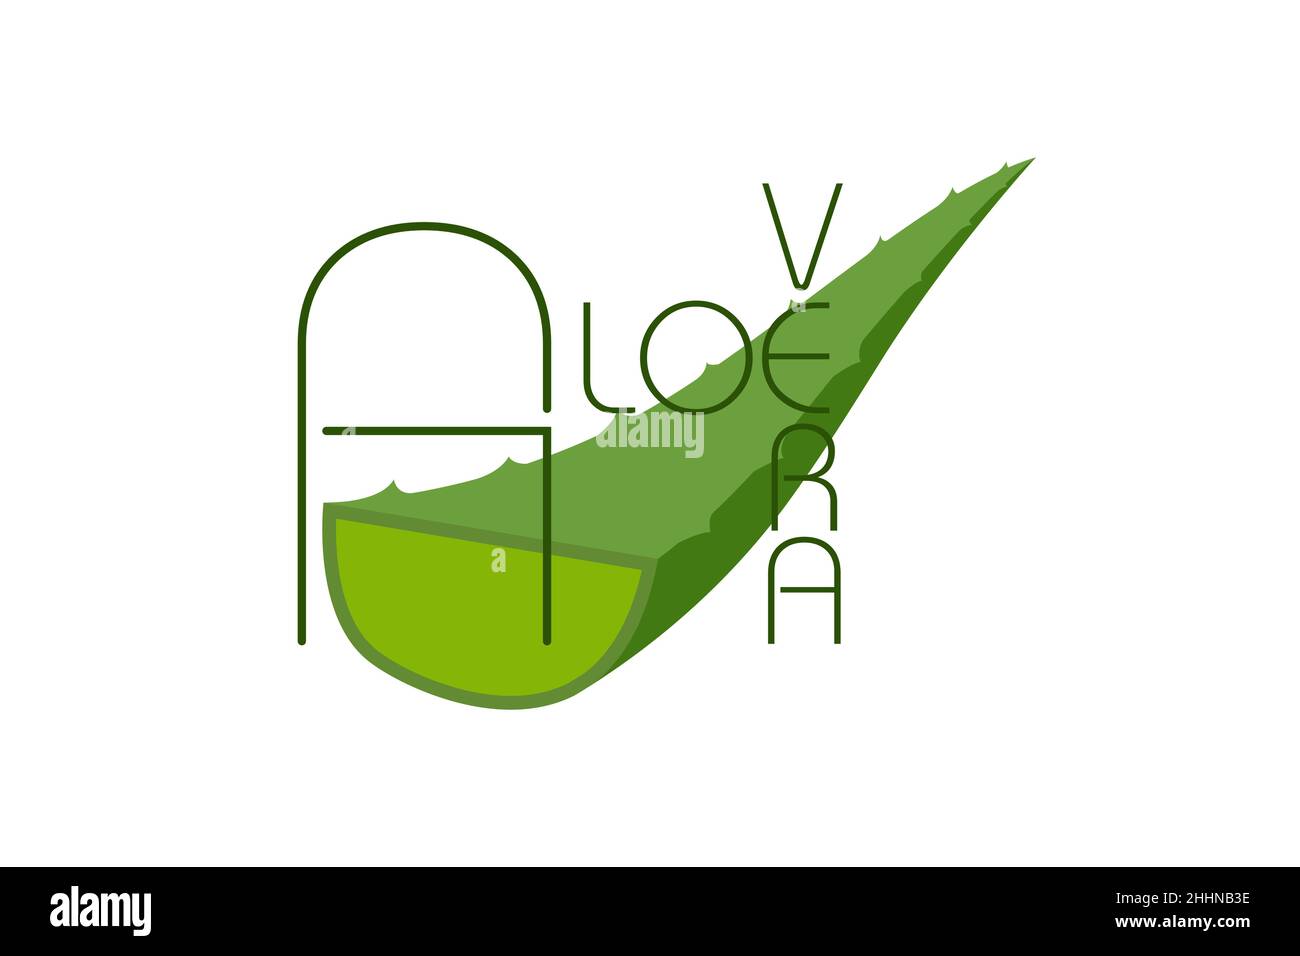 Logo vert aloe Vera icône pour l'étiquette d'emballage de produit biologique naturel.Affiche de feuille d'aloès Vera pour le modèle de conception d'emballage de crème cosmétique ou hydratante. Illustration de Vecteur